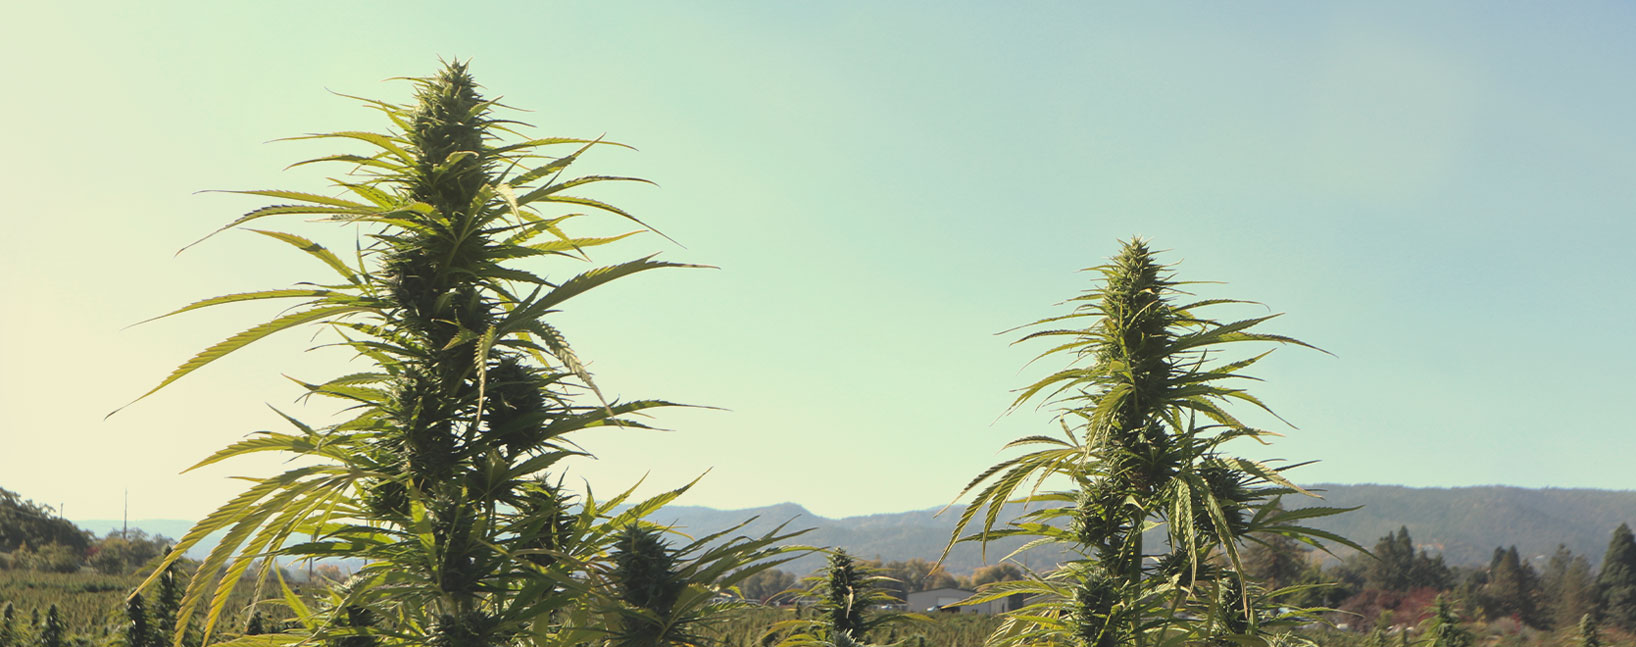 Thai-cannabis odlingsegenskaper